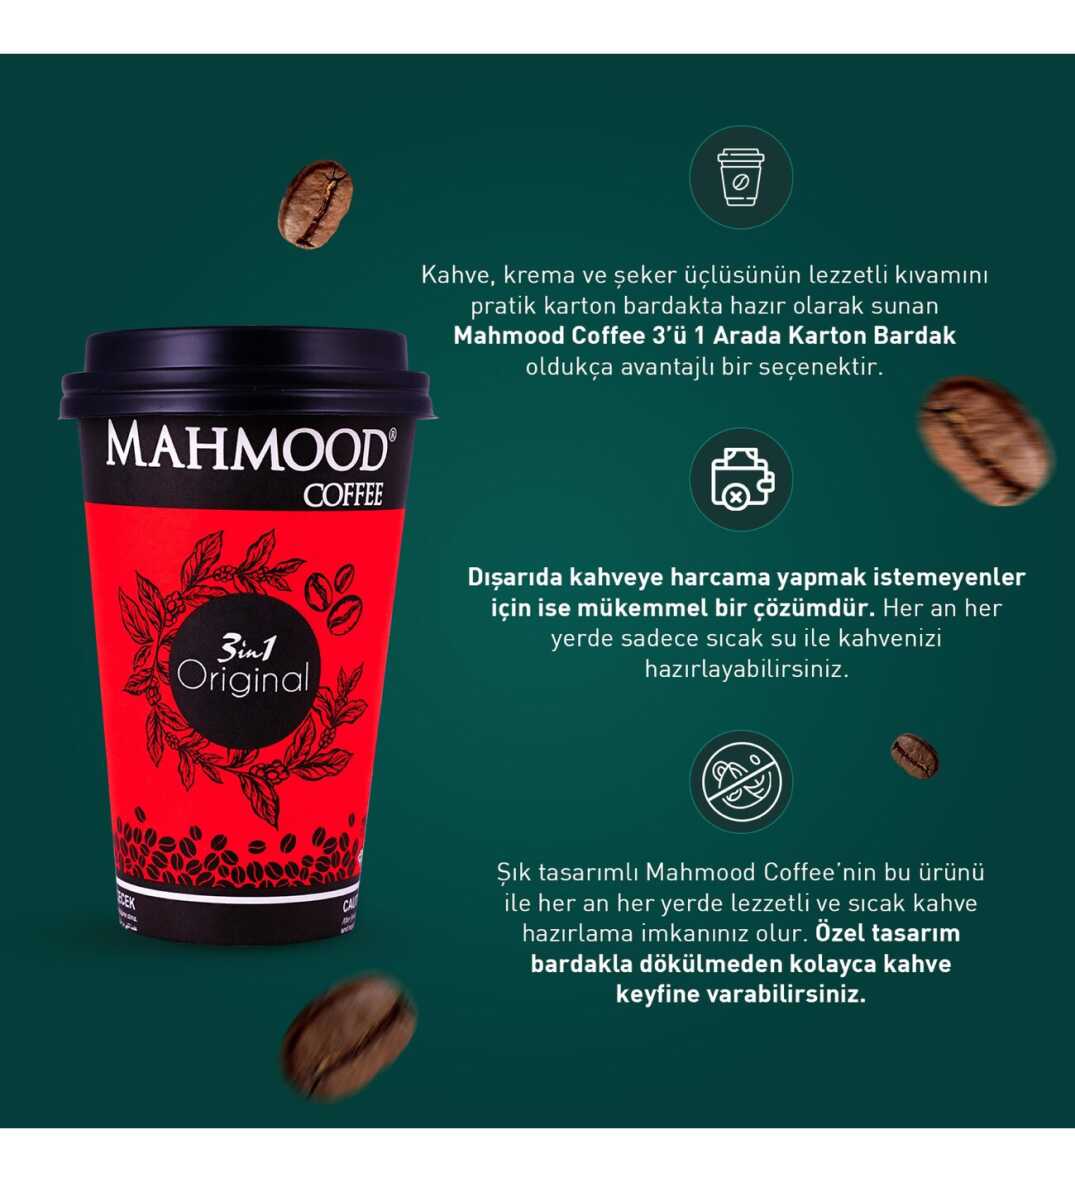 Mahmood Coffee 3ü1 Arada Karton Bardak 18 Gr x 5 Adet - 3